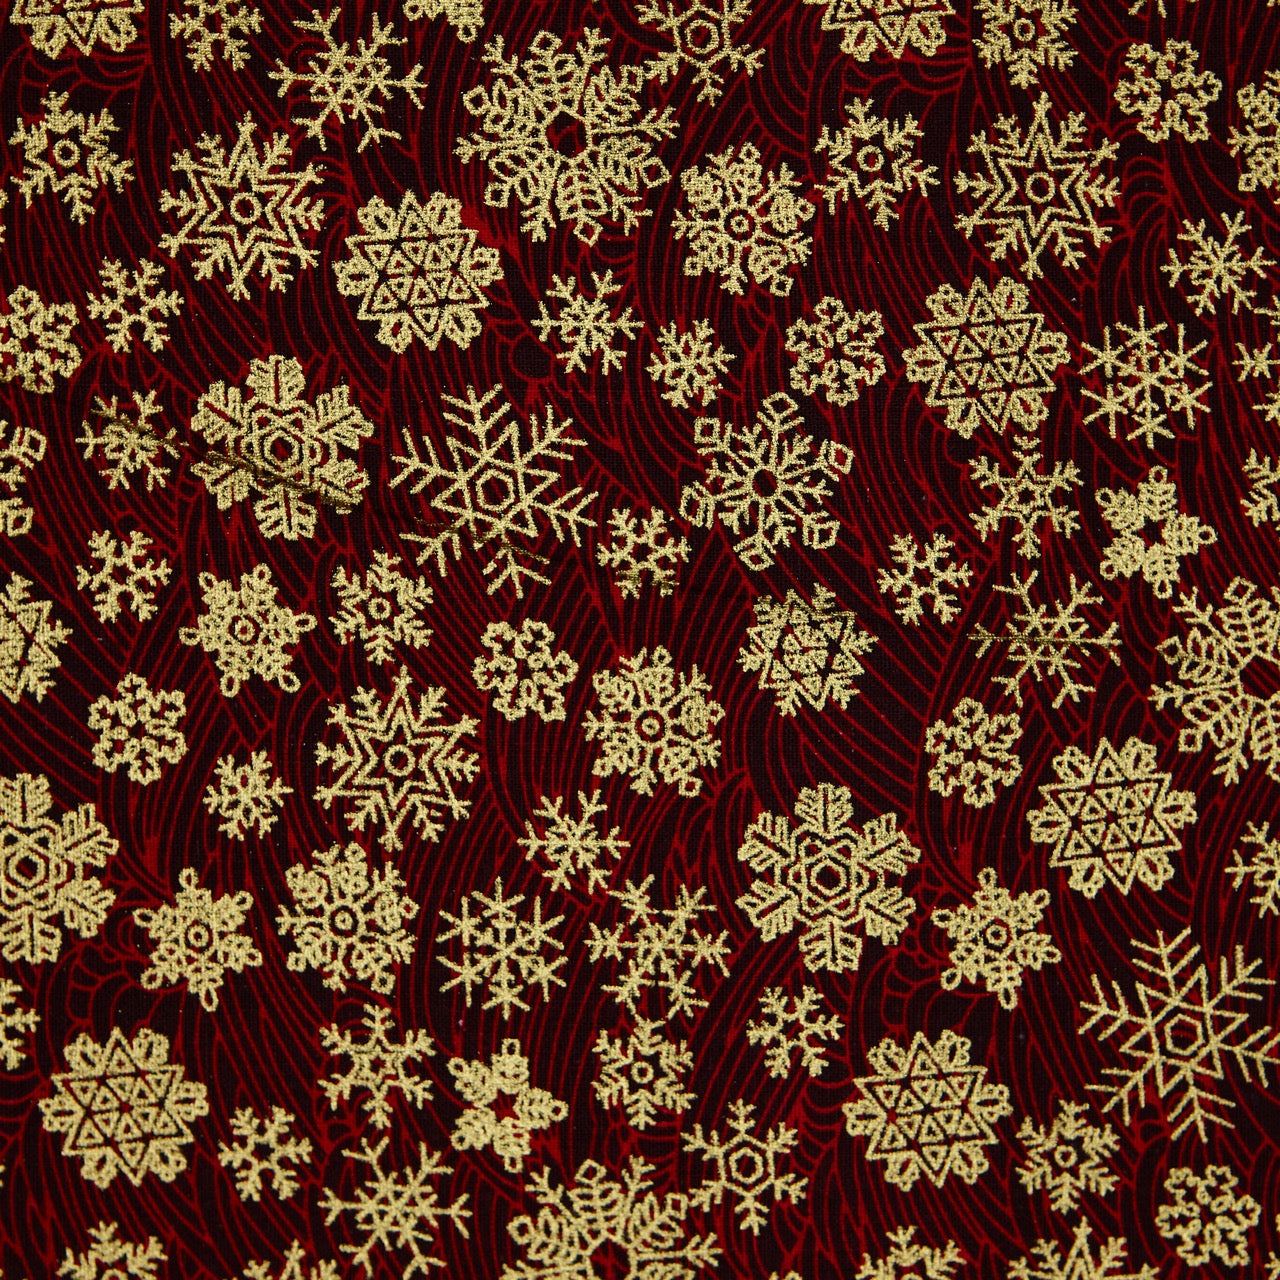 Cotton Metallic - Snowflakes - Red (detail)